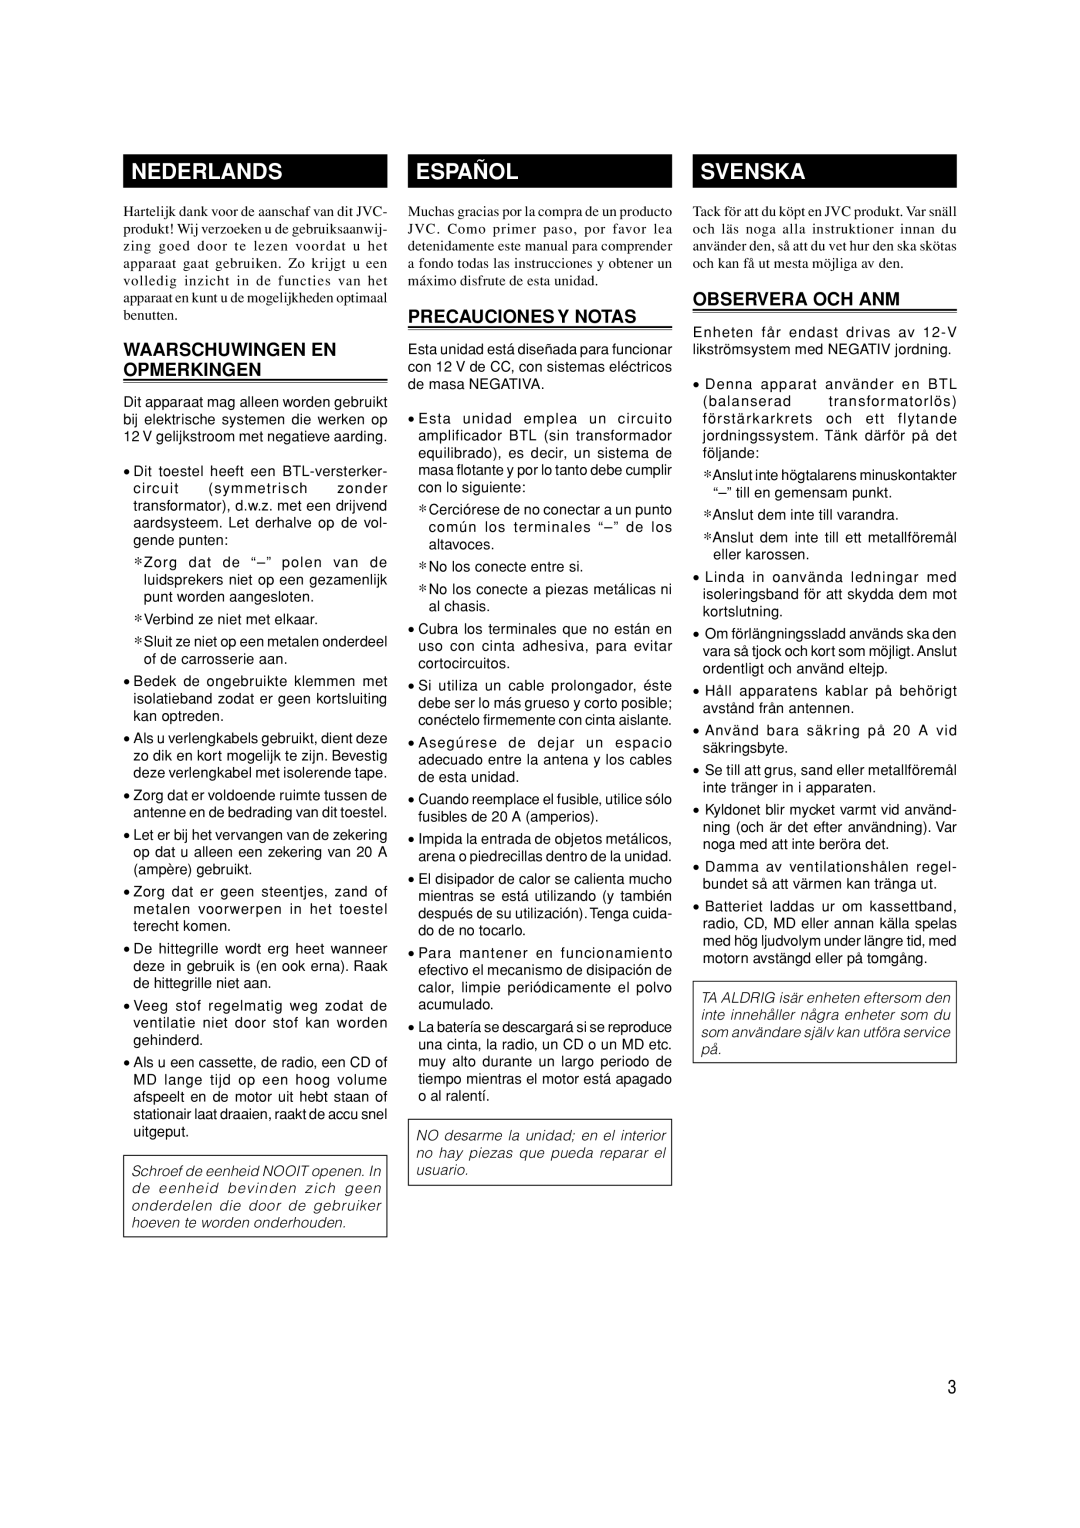 JVC KS-AX4550 manual Nederlands, Español, Svenska, Waarschuwingen En Opmerkingen, Precauciones Y Notas, Observera Och Anm 